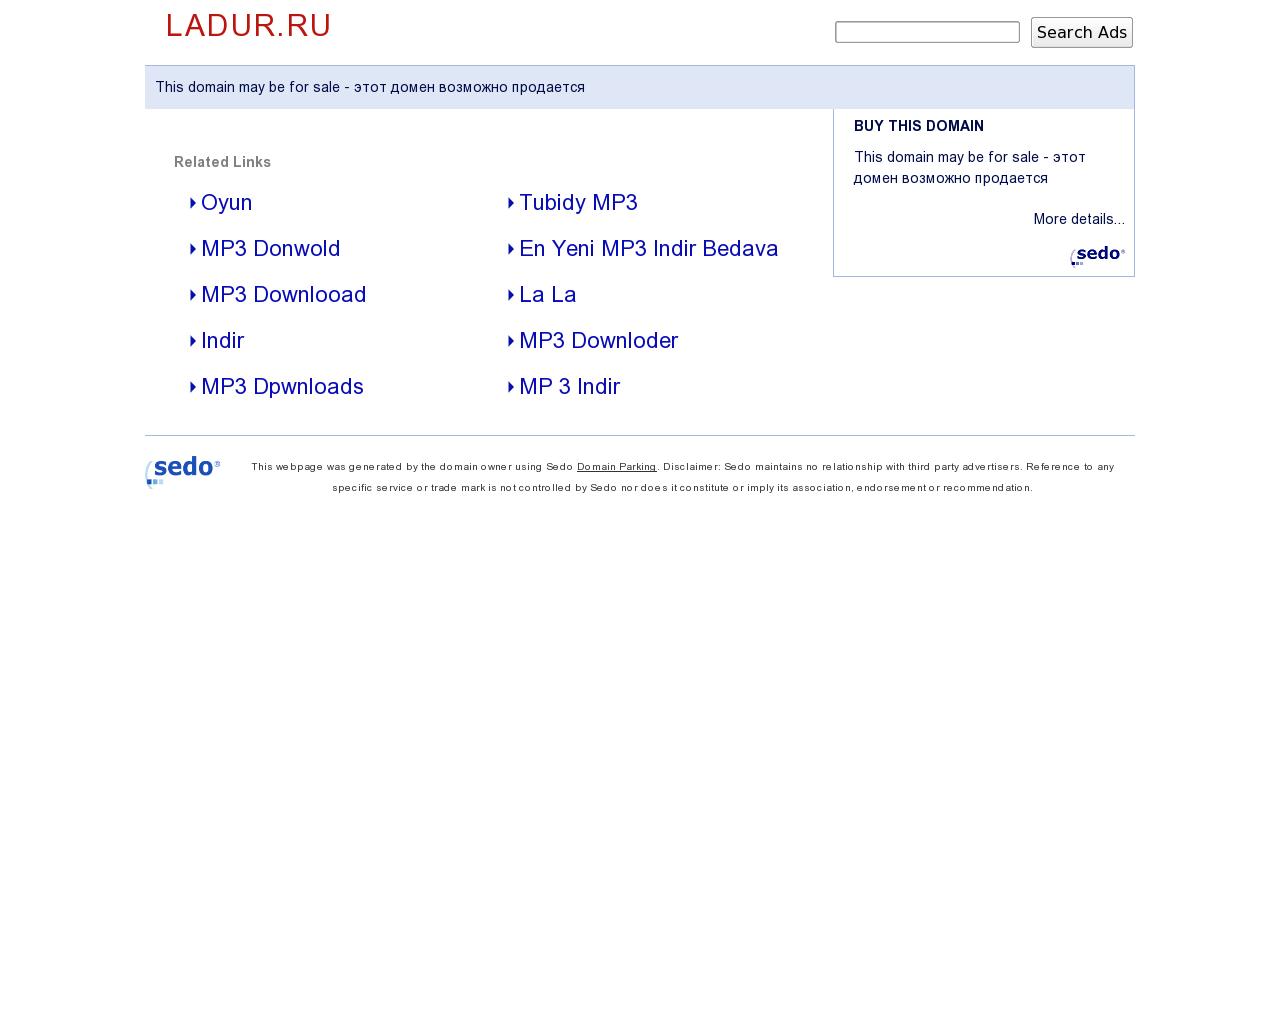 Изображение сайта ladur.ru в разрешении 1280x1024